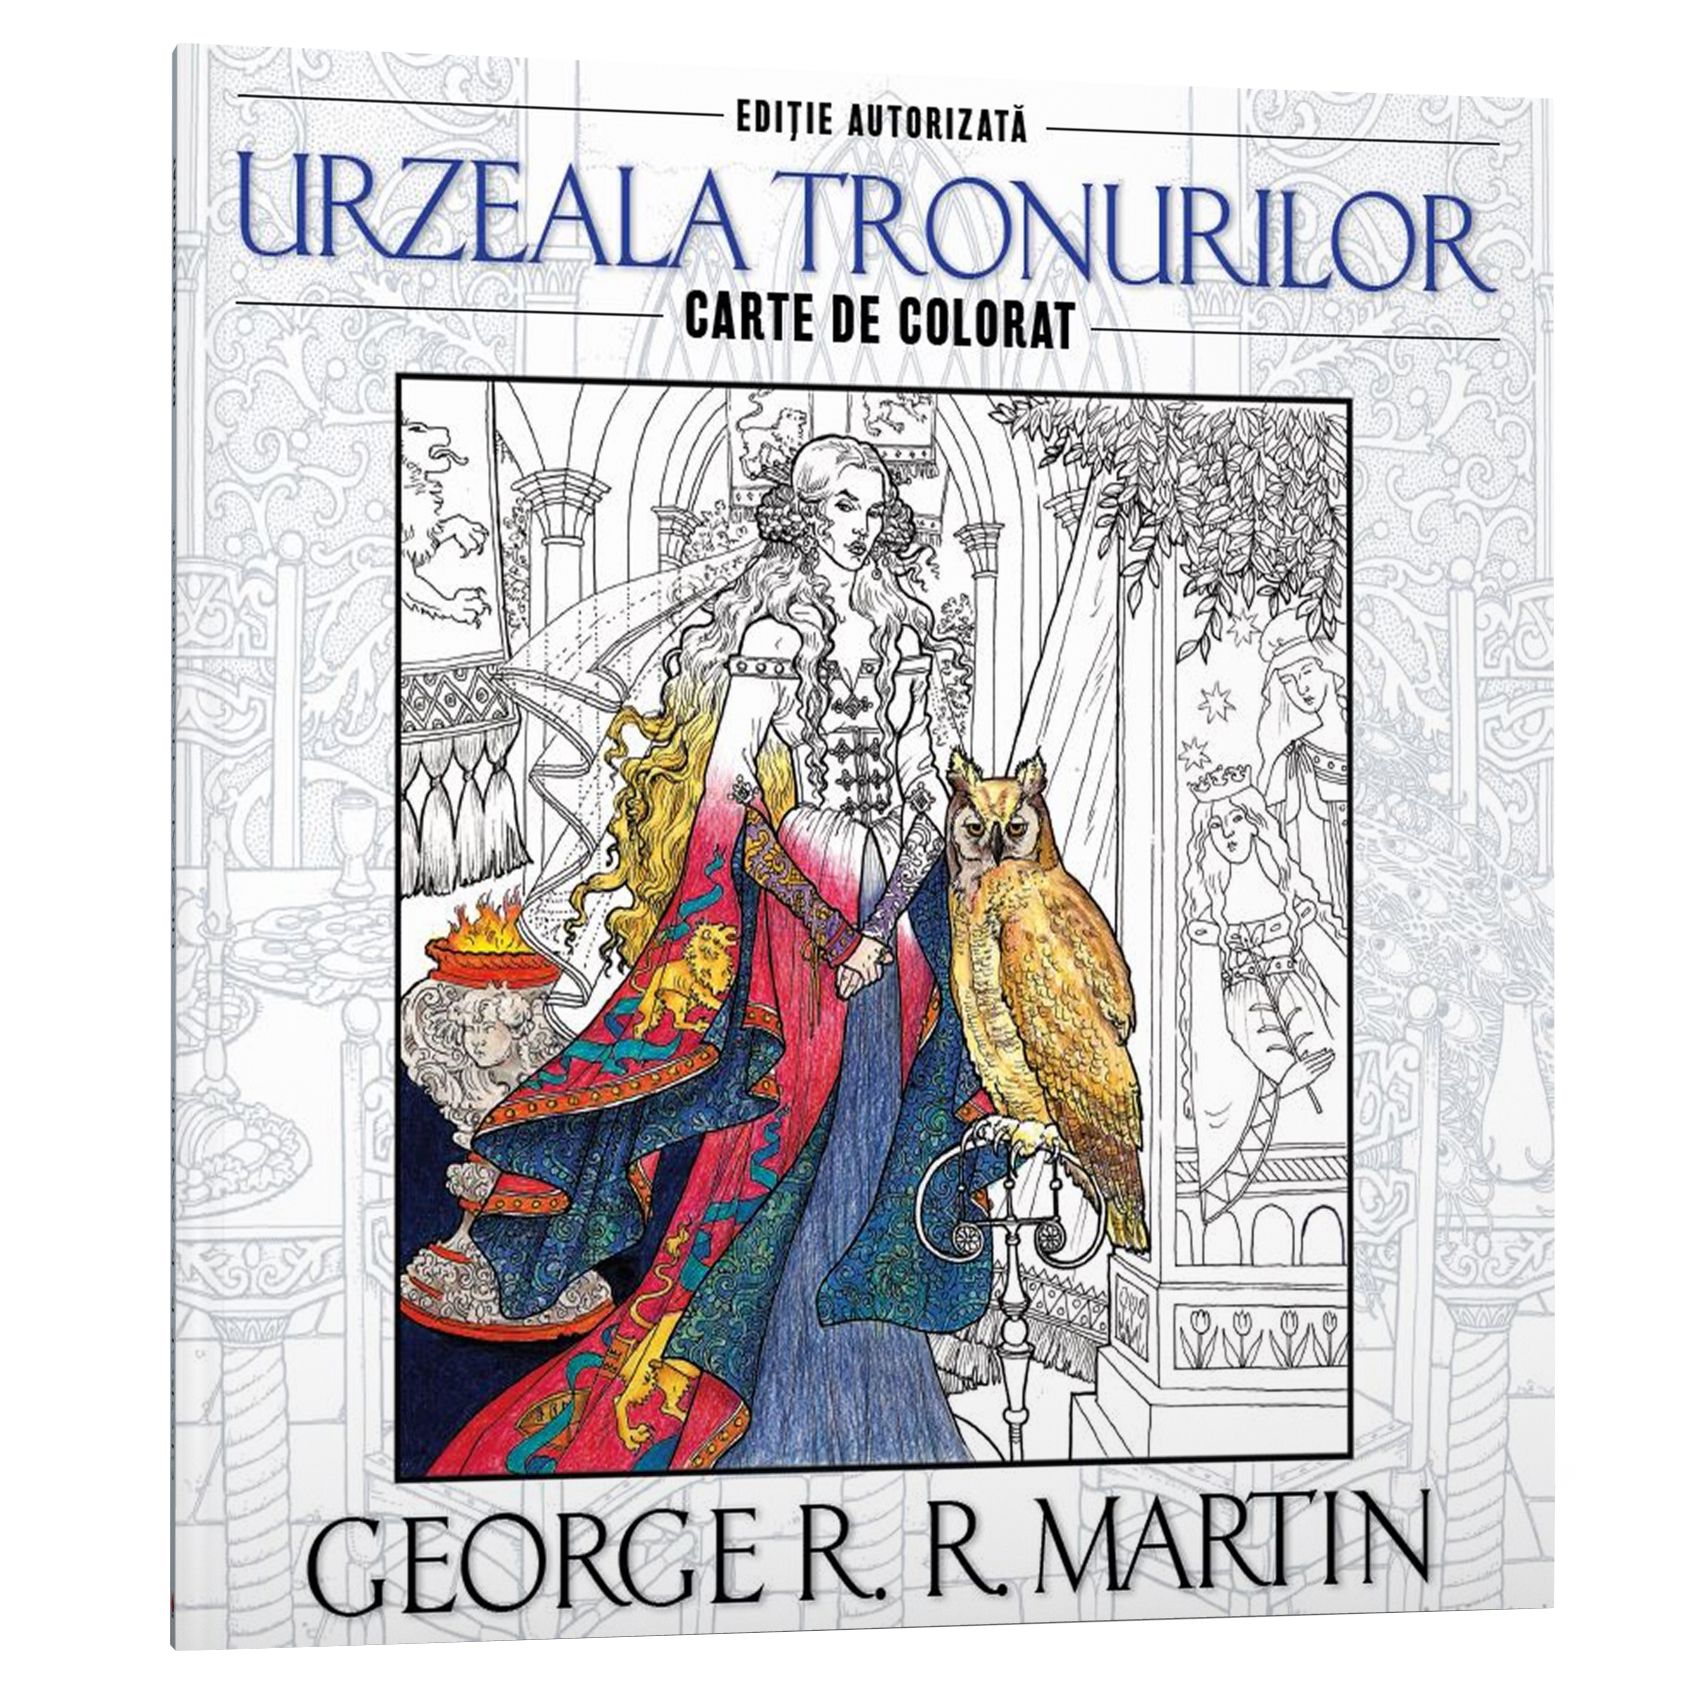 Urzeala tronurilor. Carte de colorat | George R.R. Martin carturesti.ro poza bestsellers.ro